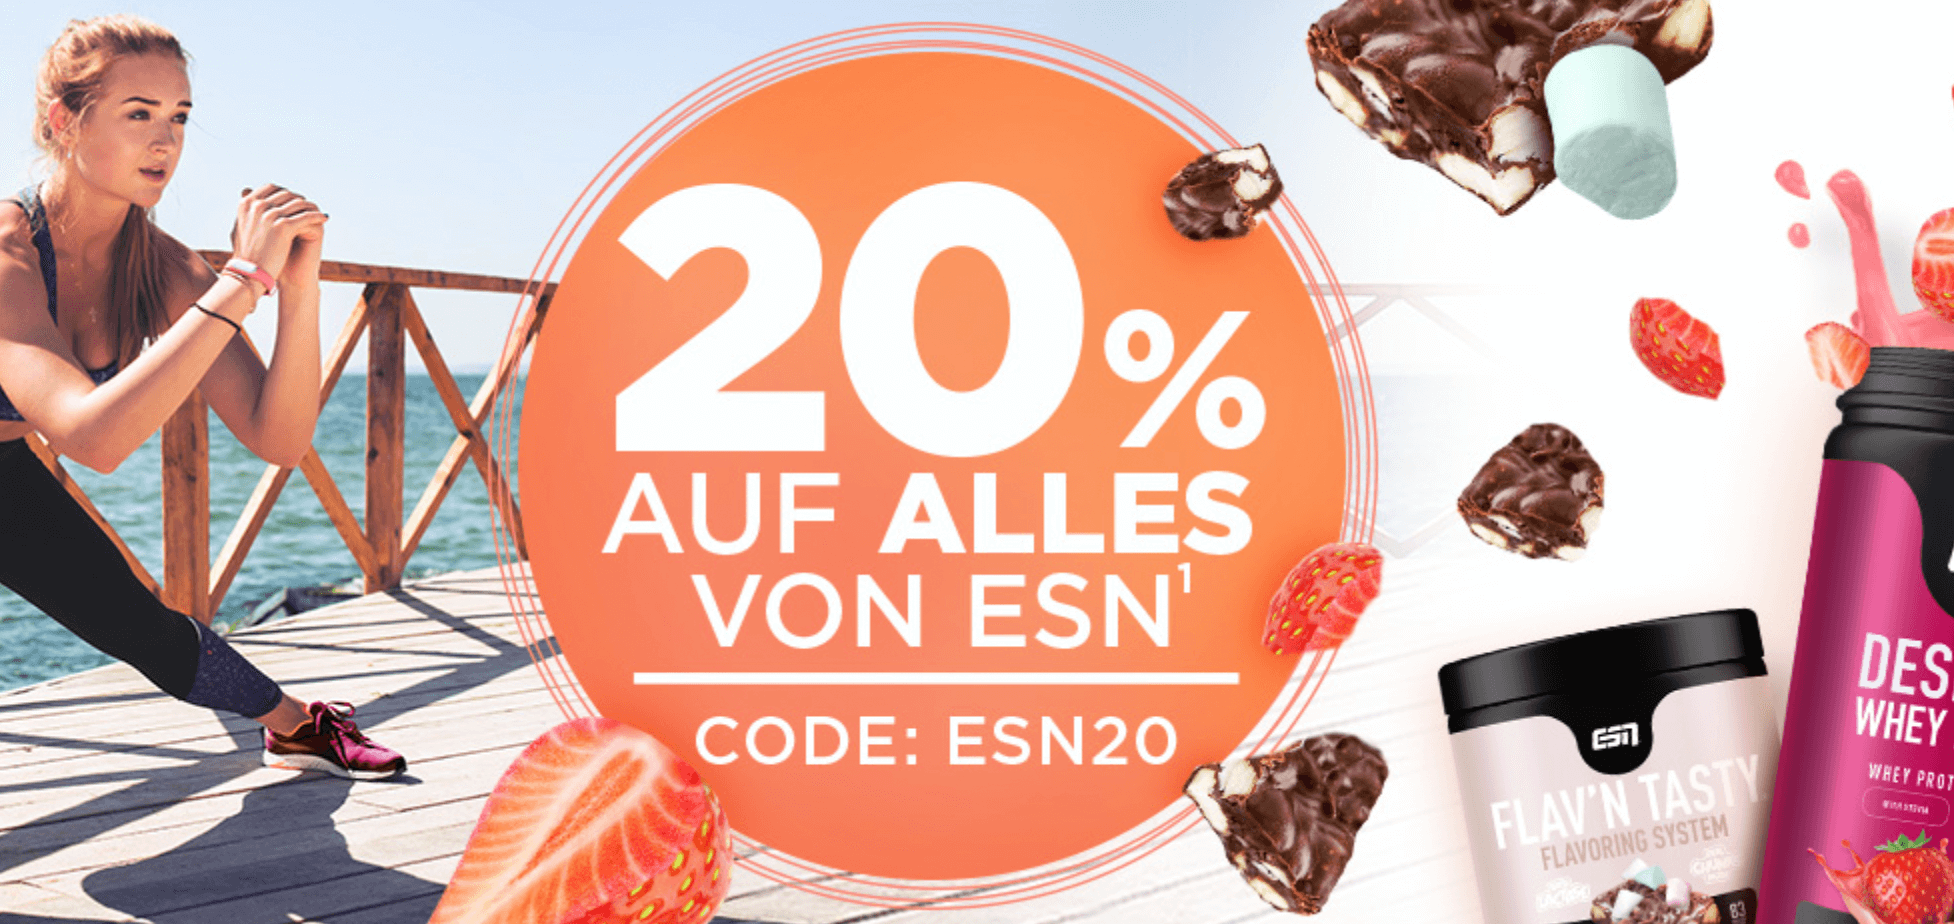 20% auf alles von ESN bei Fitmart | Suppligator.de